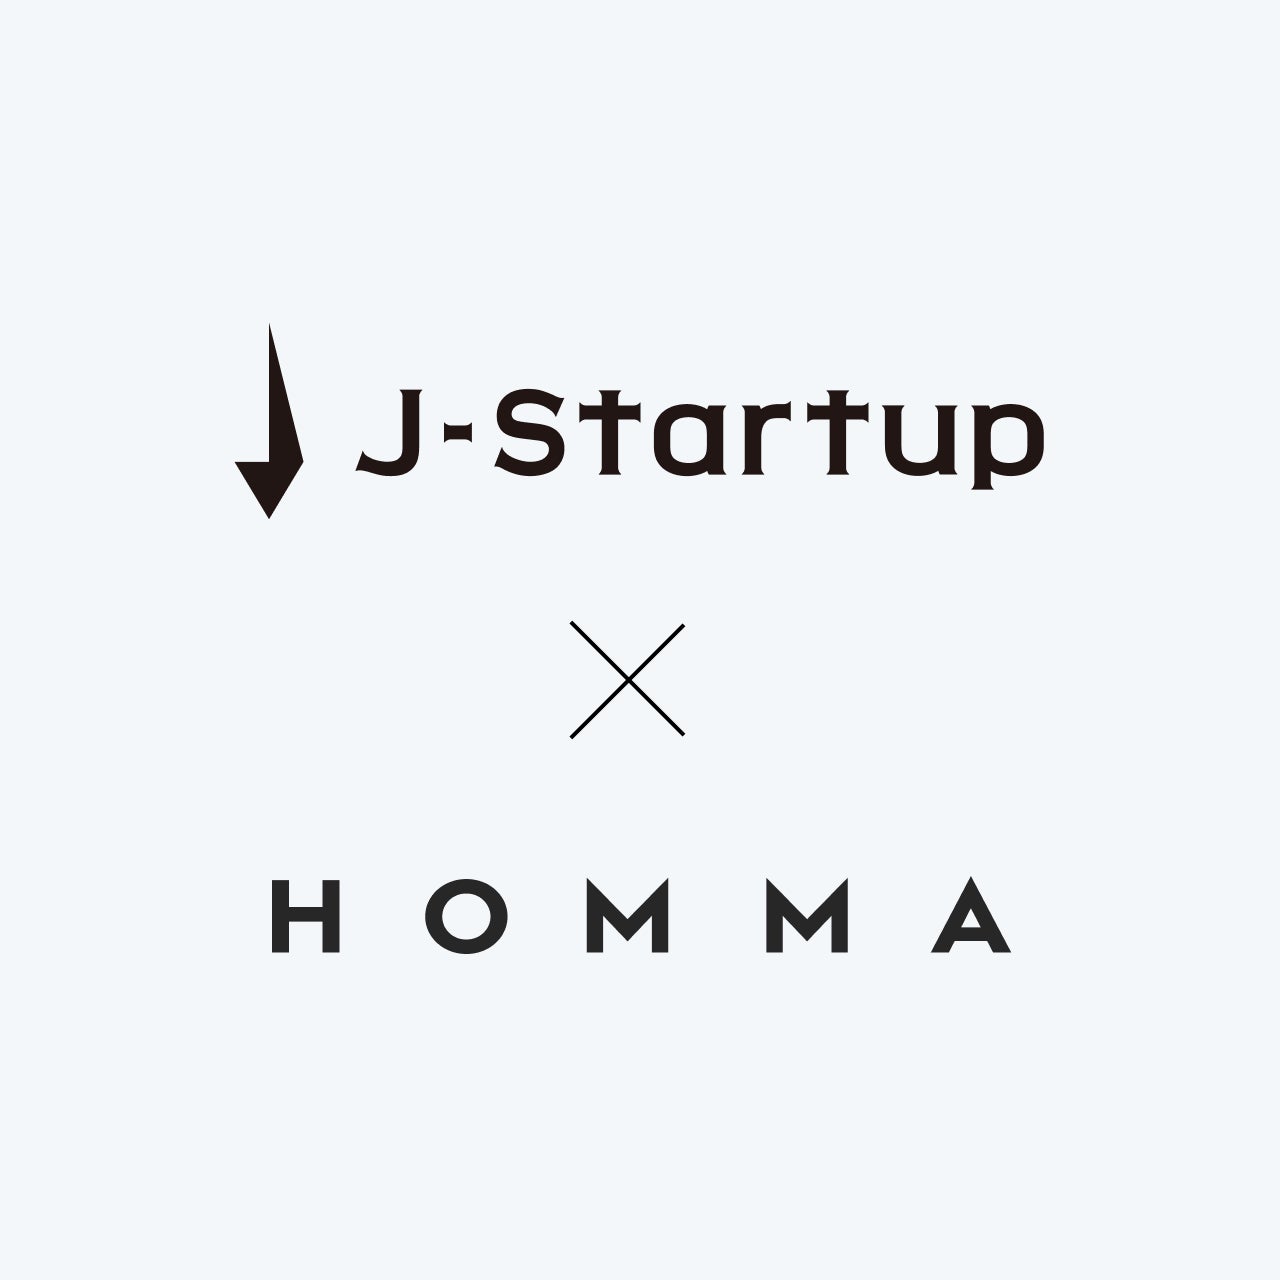 経済産業省によるスタートアップ支援プログラムJ-StartupにHOMMAが選定のサブ画像1